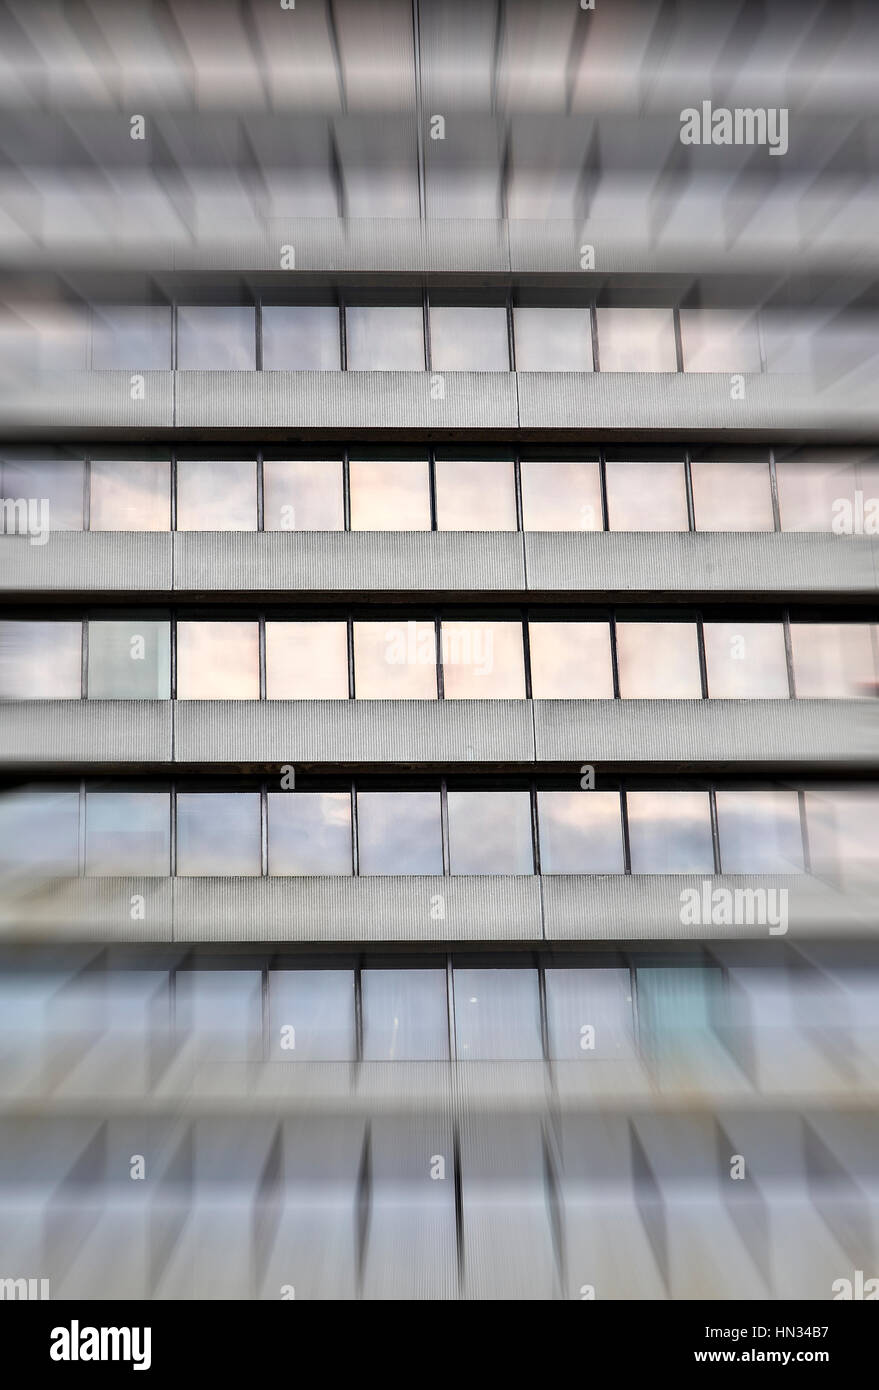 Konzeptbild eines grauen Beton Büro Häuserblocks Gebäude Fenster mit Zoom blur-Effekt angewendet Stockfoto